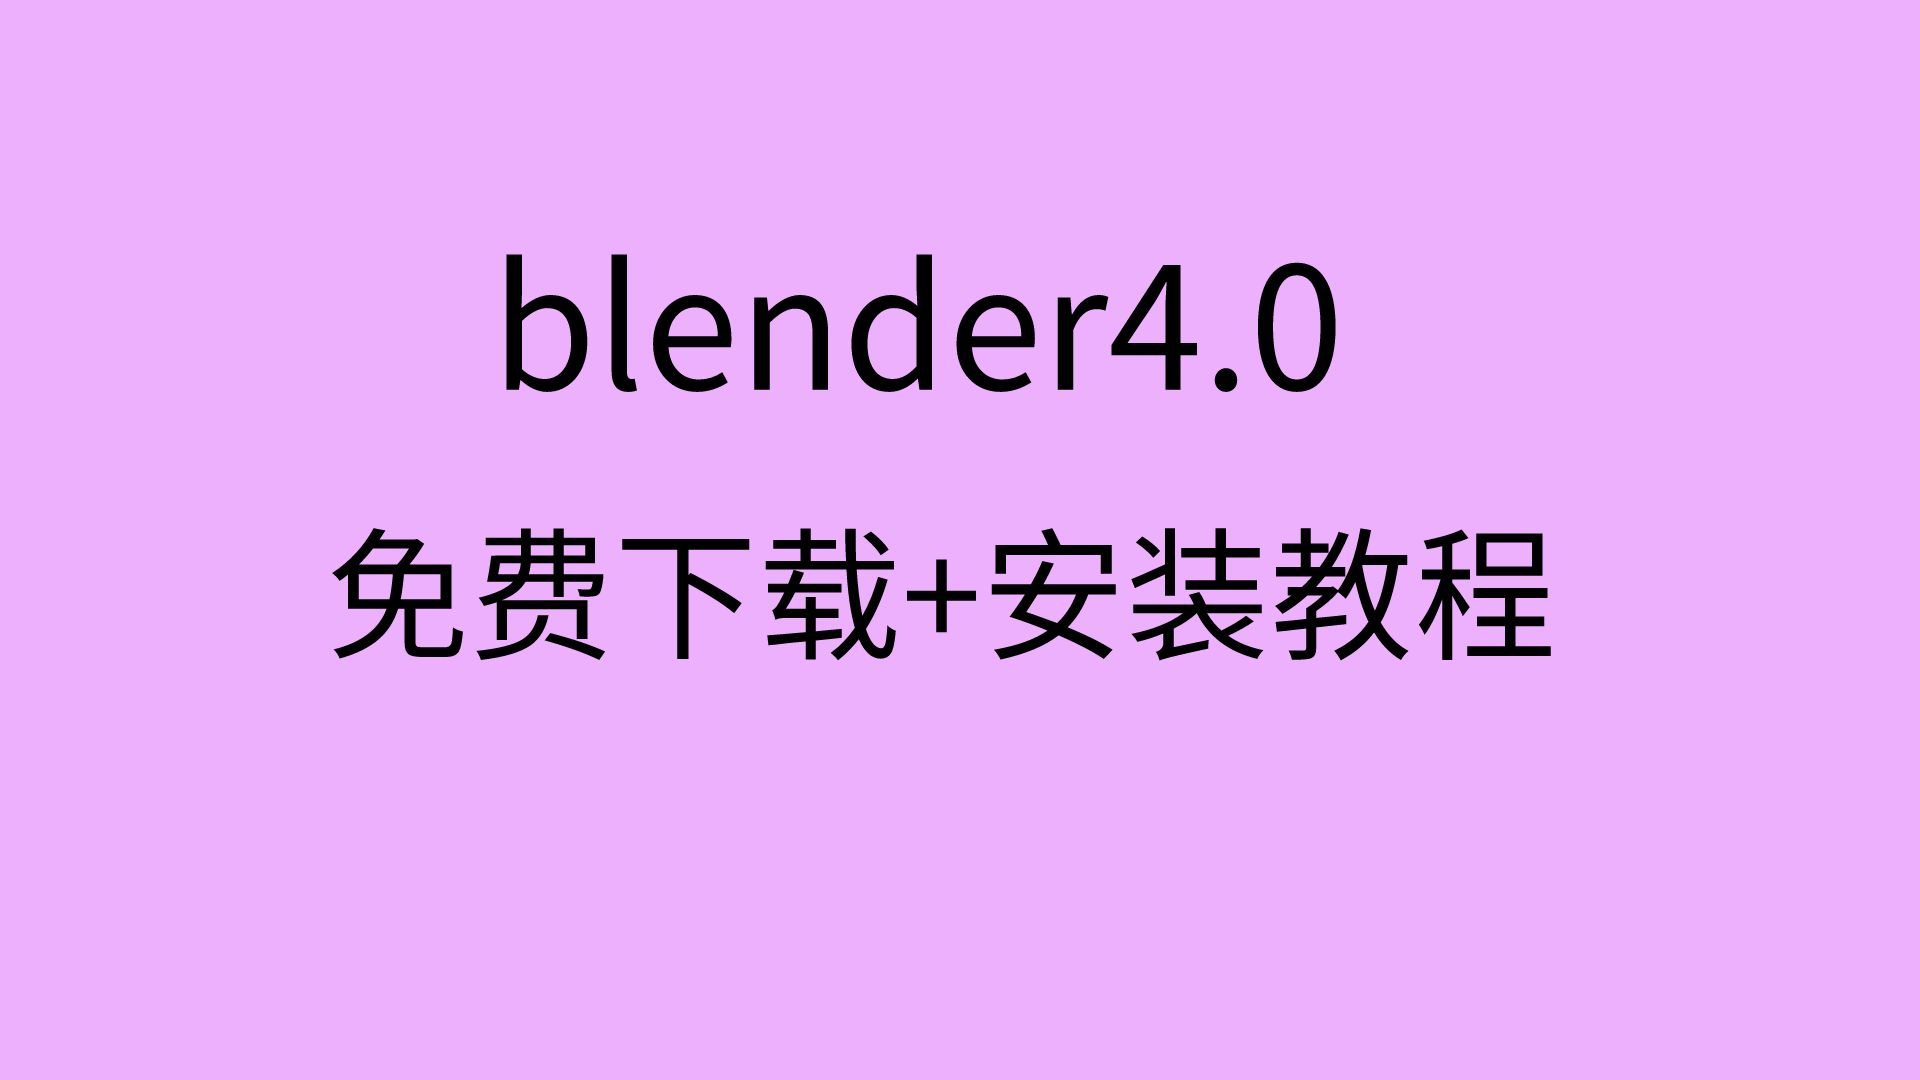 blender4.0安装教程+blender软件安装包免费下载视频教程